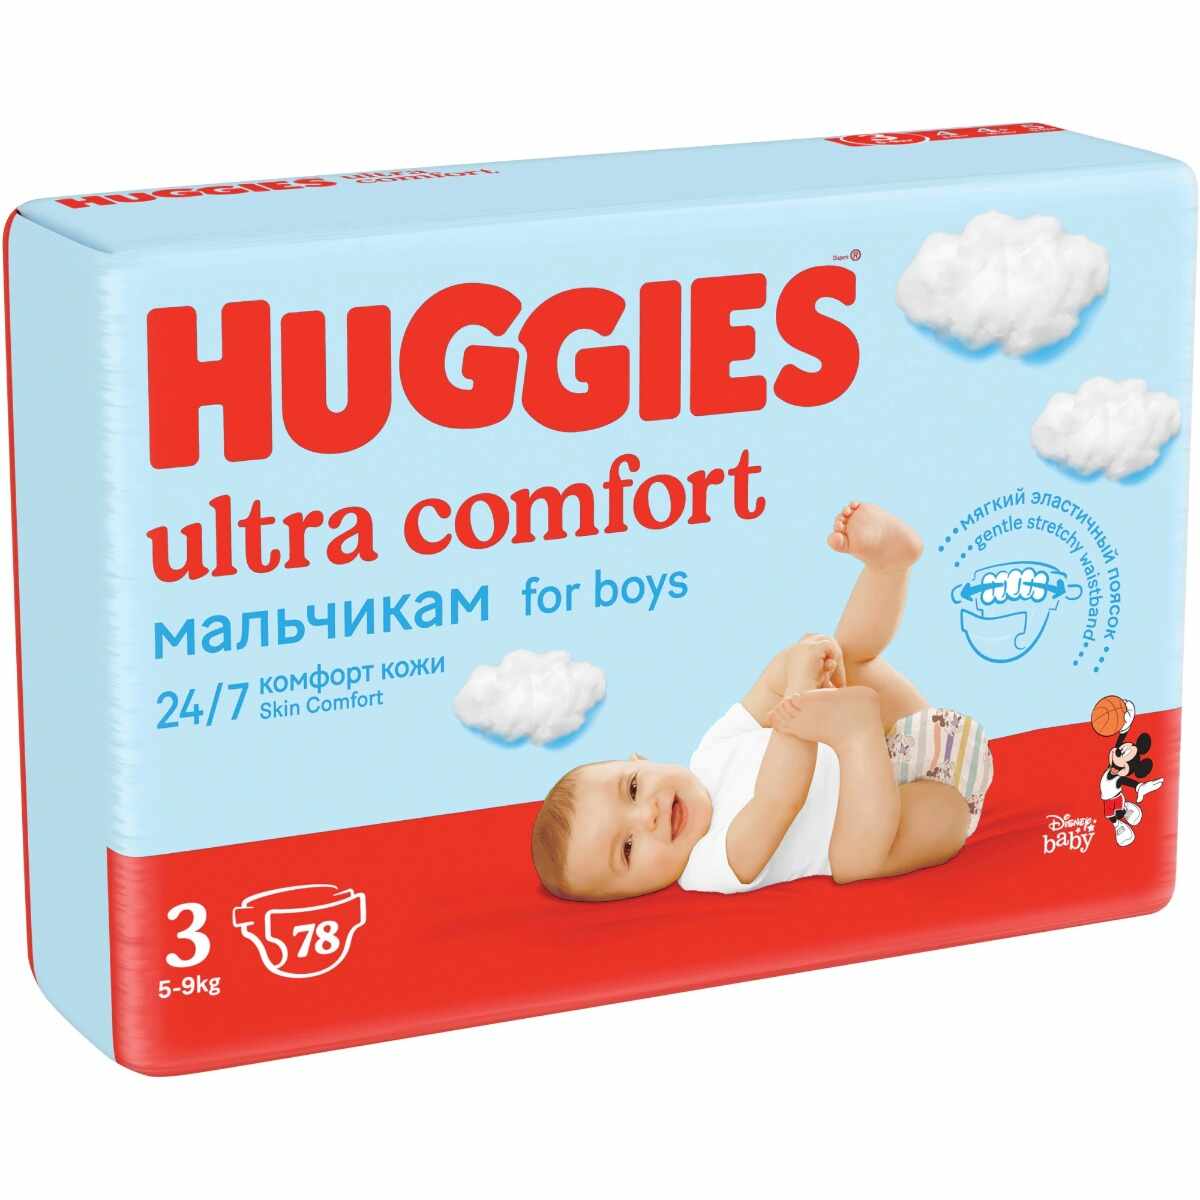 Scutece pentru baieti Ultra Comfort Nr.3 pentru 5-9 kg, 78 bucati, Huggies